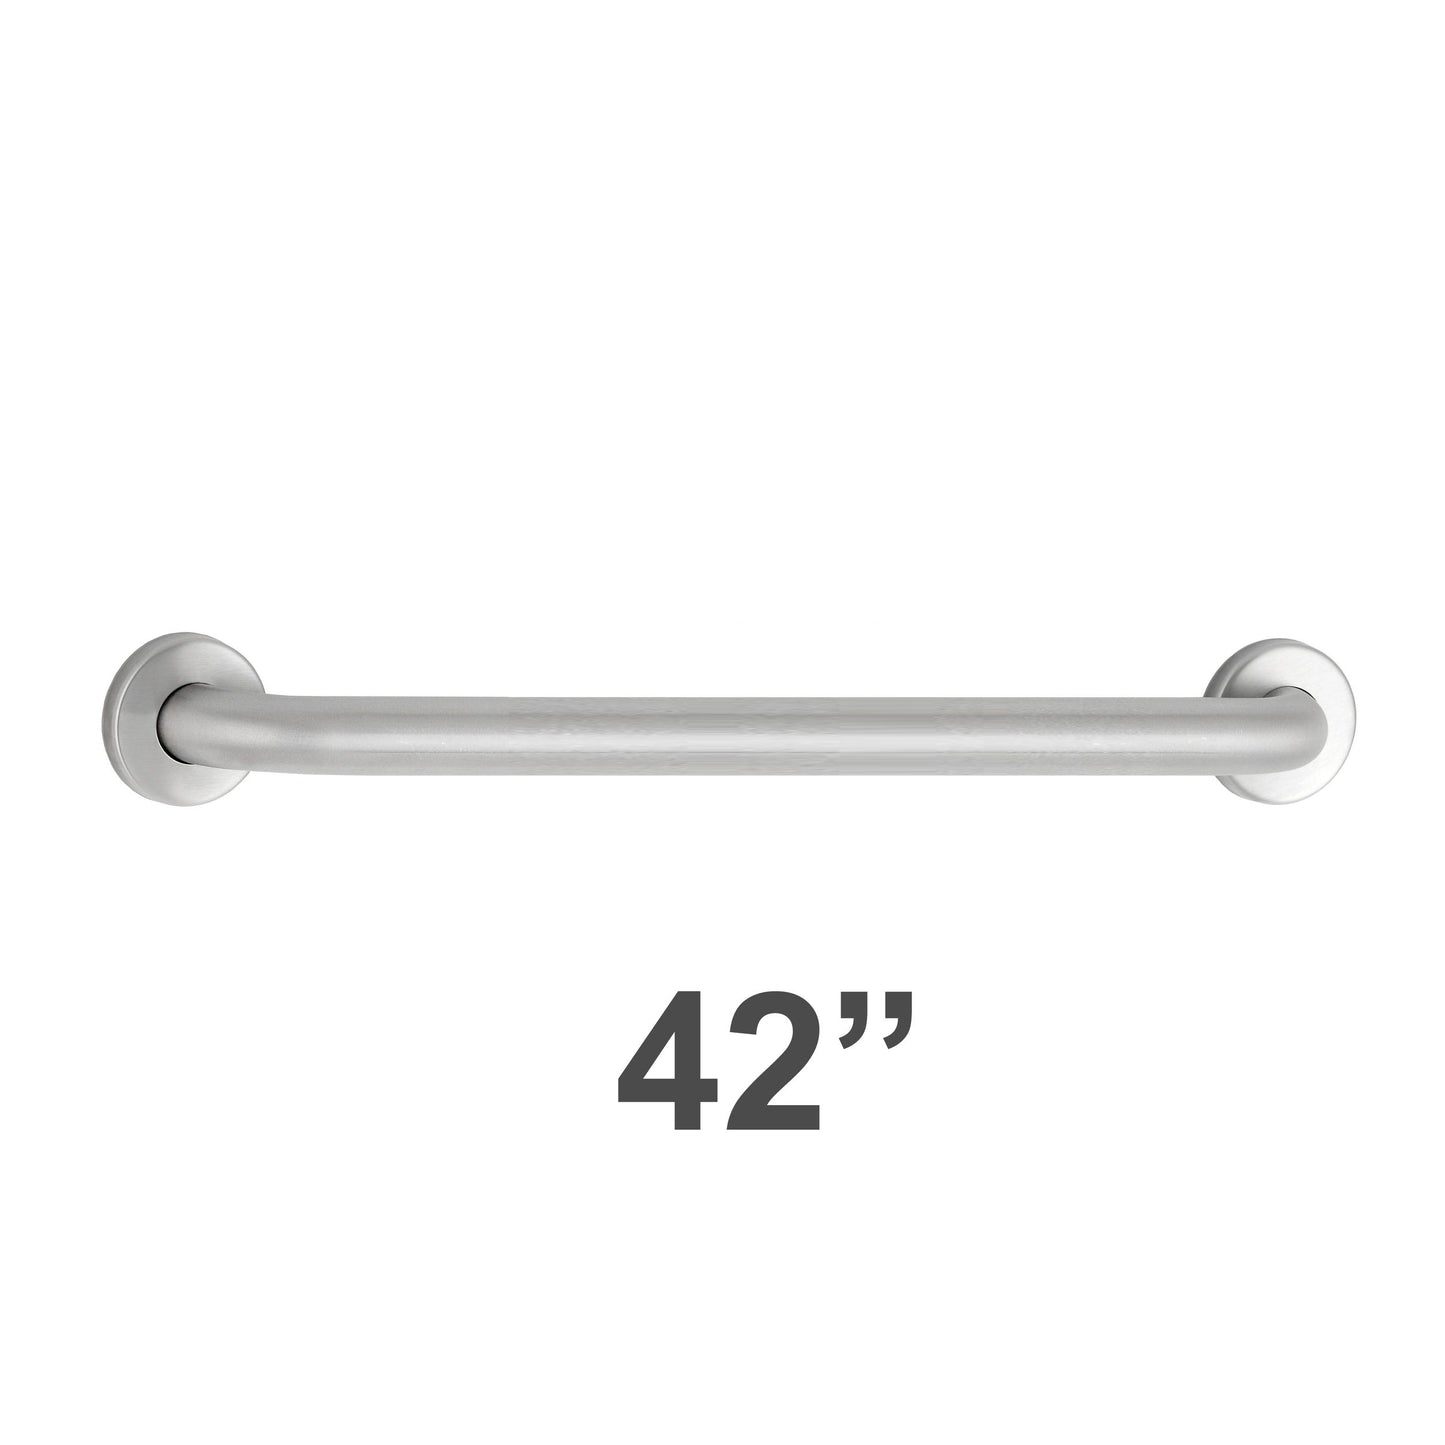 Bobrick 5806x42 - 1-1/4" Diameter 42"  Length Straight Grab Bar in Satin Stainless Steel